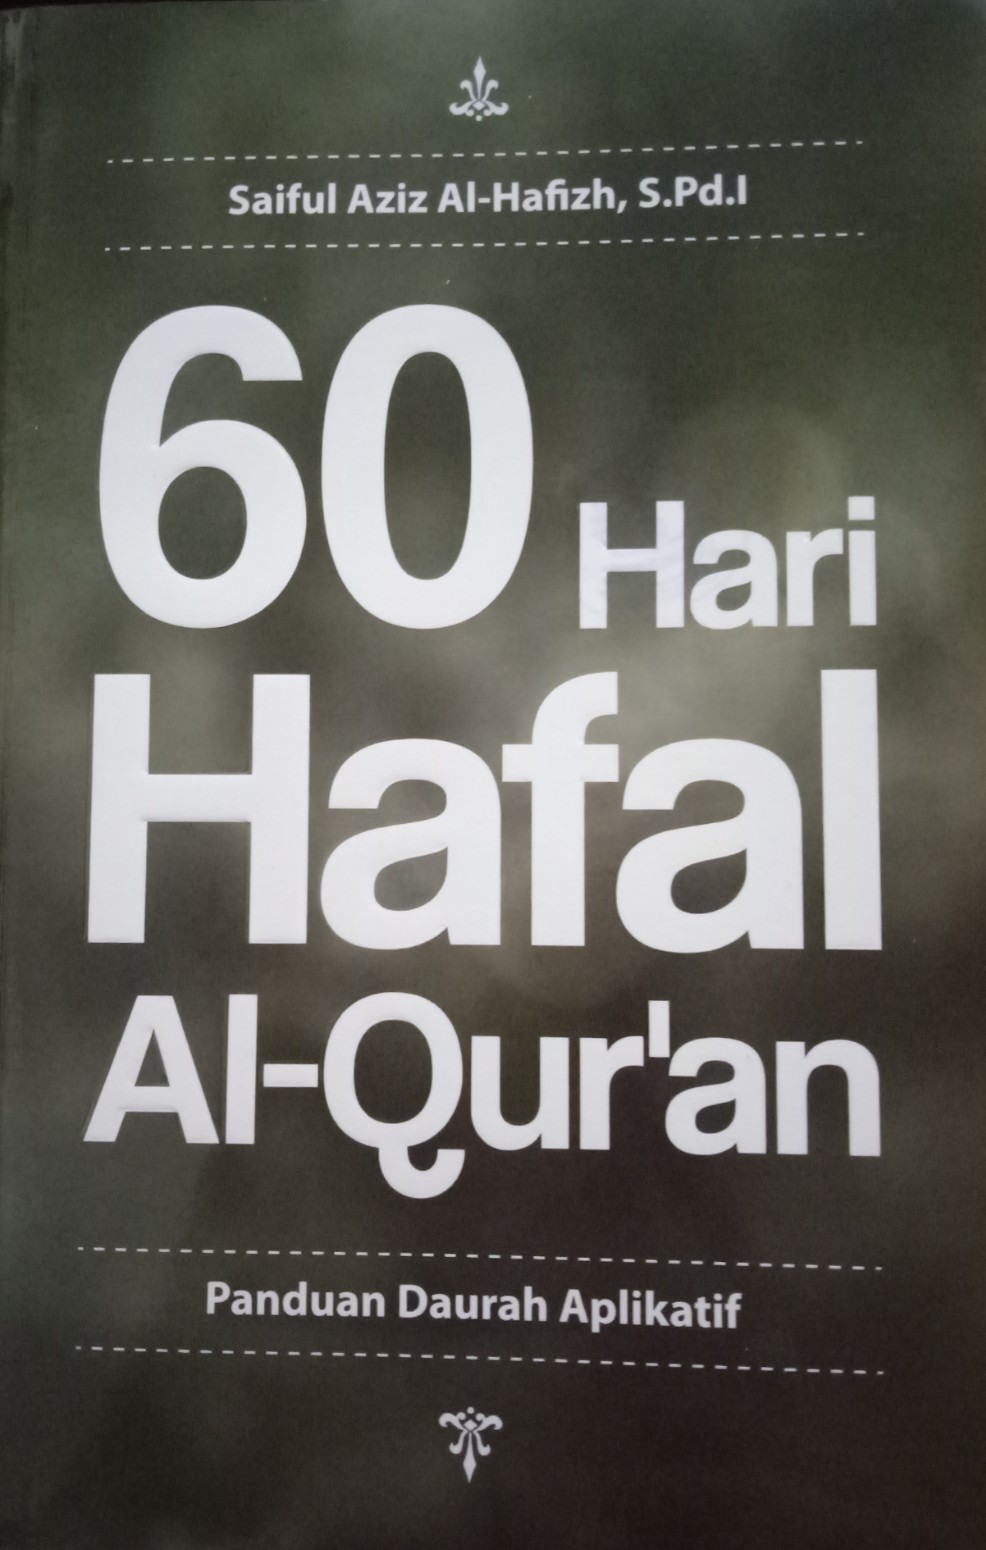 60 HARI HAFAL AL-QUR'AN